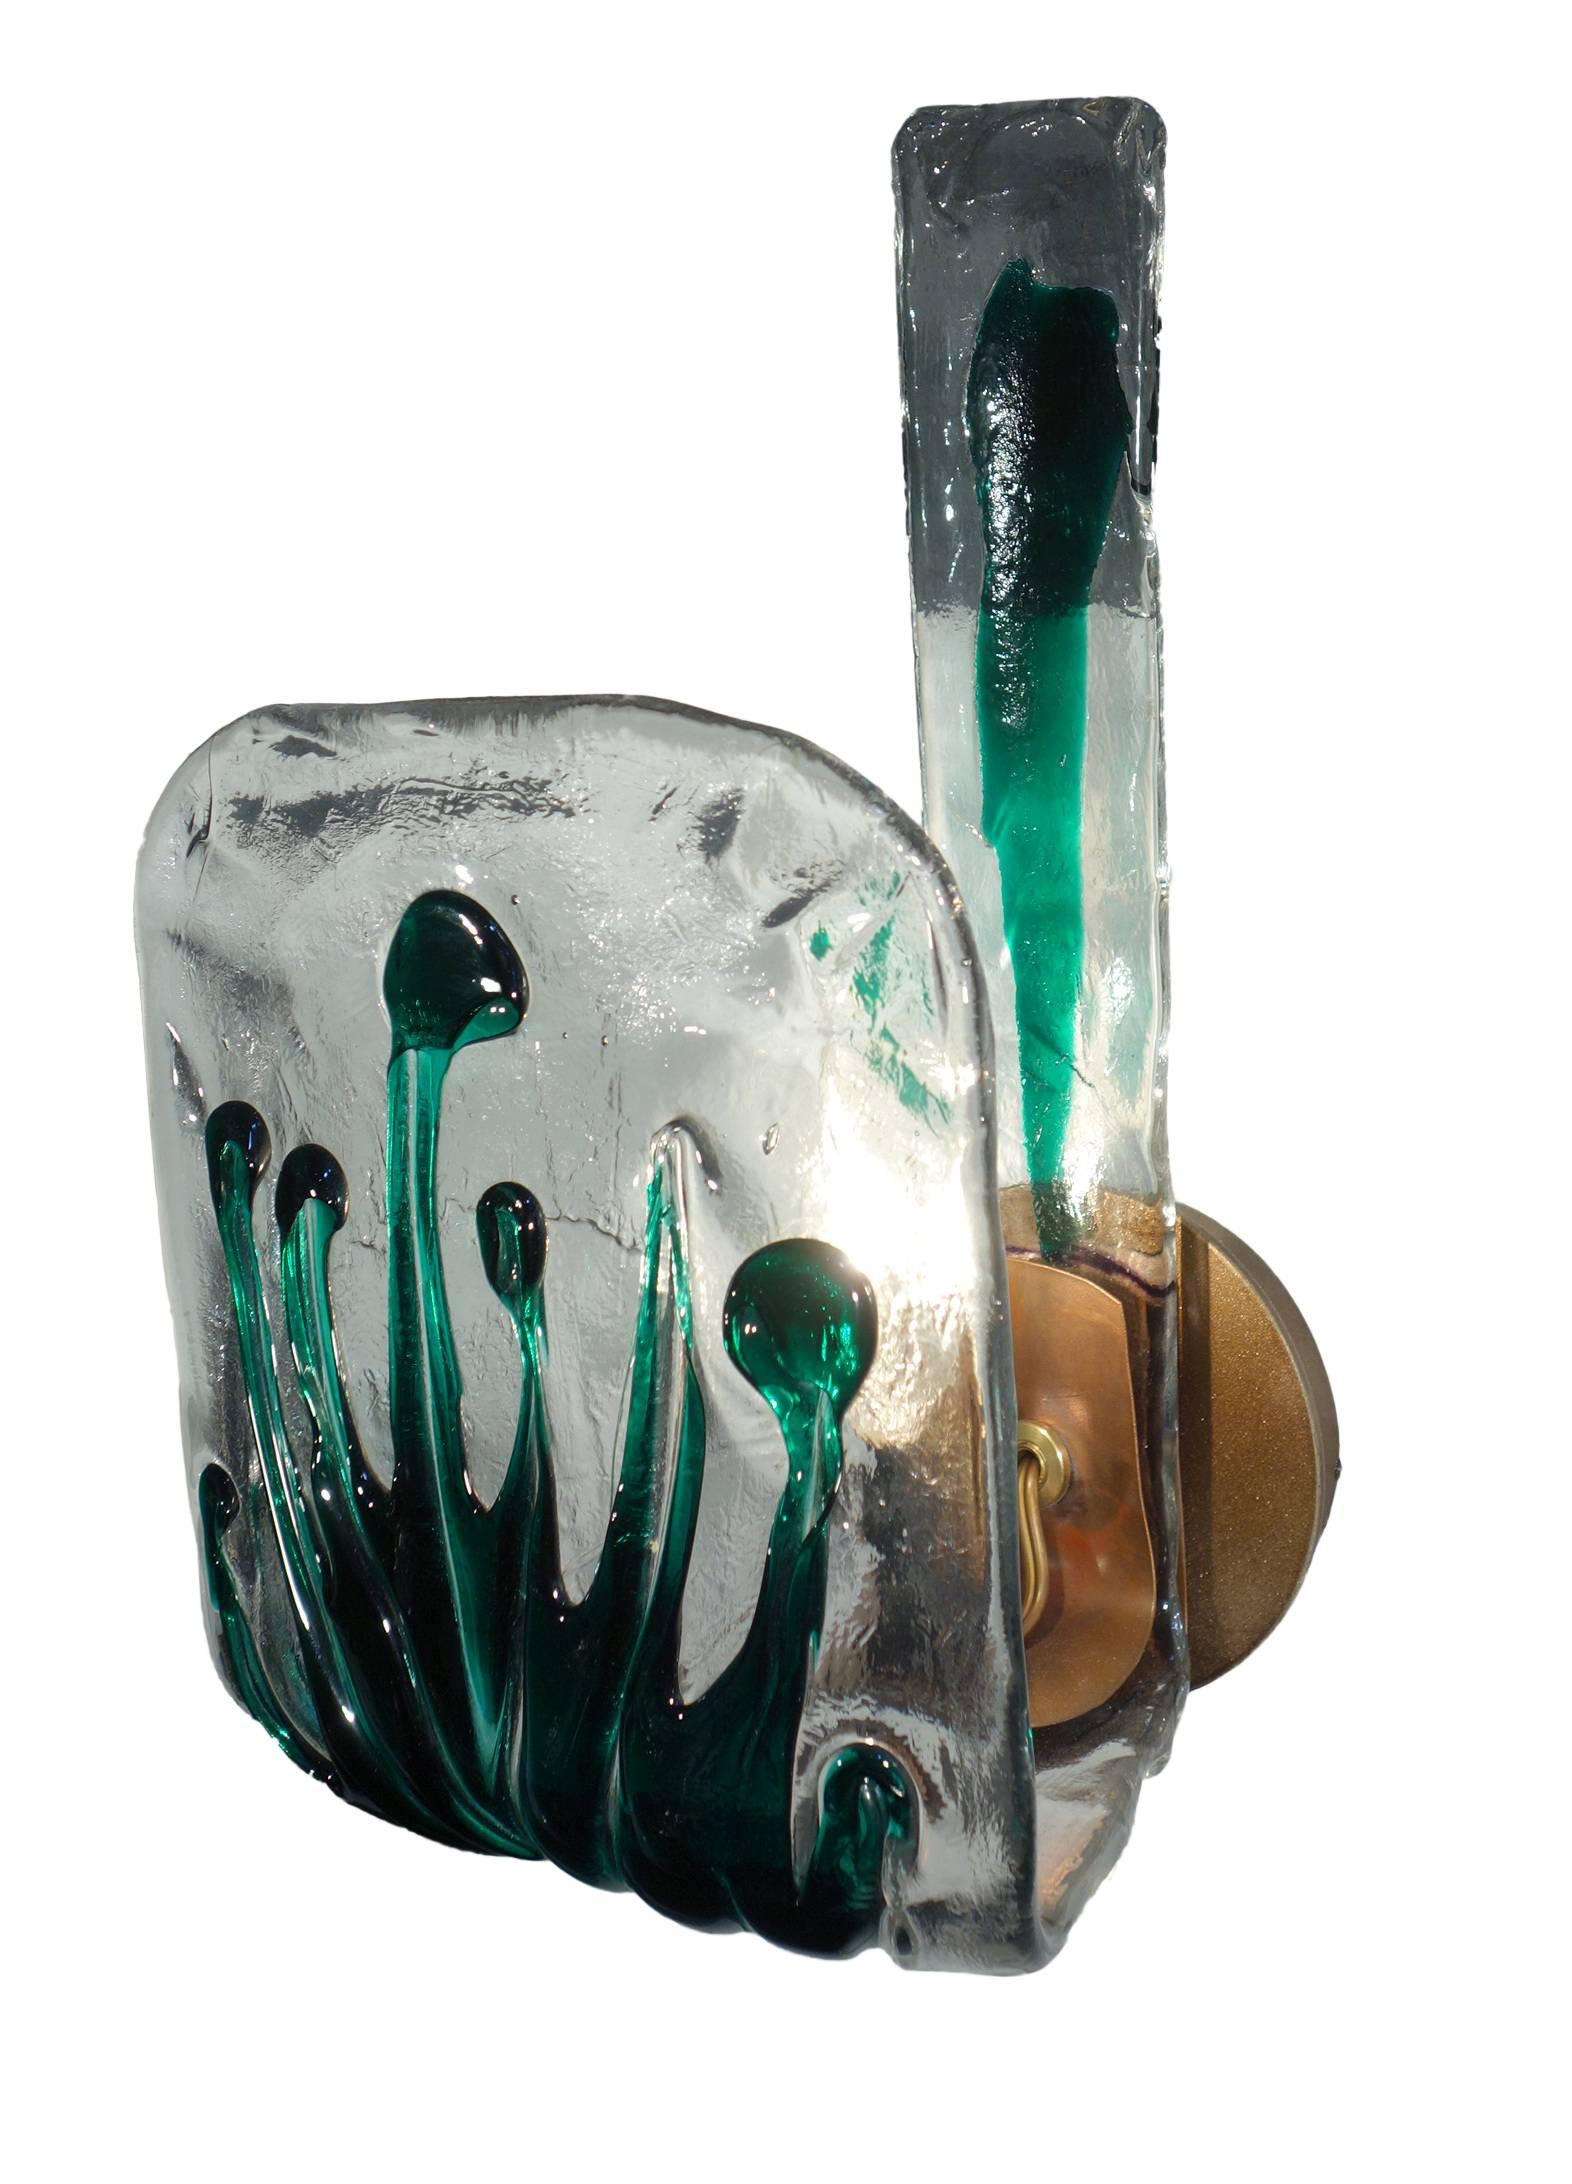 Fabelhaftes dickes Murano-Kunstglas im Jugendstil mit Farnmotiv, ca. 1970, vor kurzem meisterhaft zu reizvollen Kerzenleuchtern mit kupferfarbener Fassung verarbeitet.   Die Leuchte wurde von Gibson Lighting International für Bellini's Antique